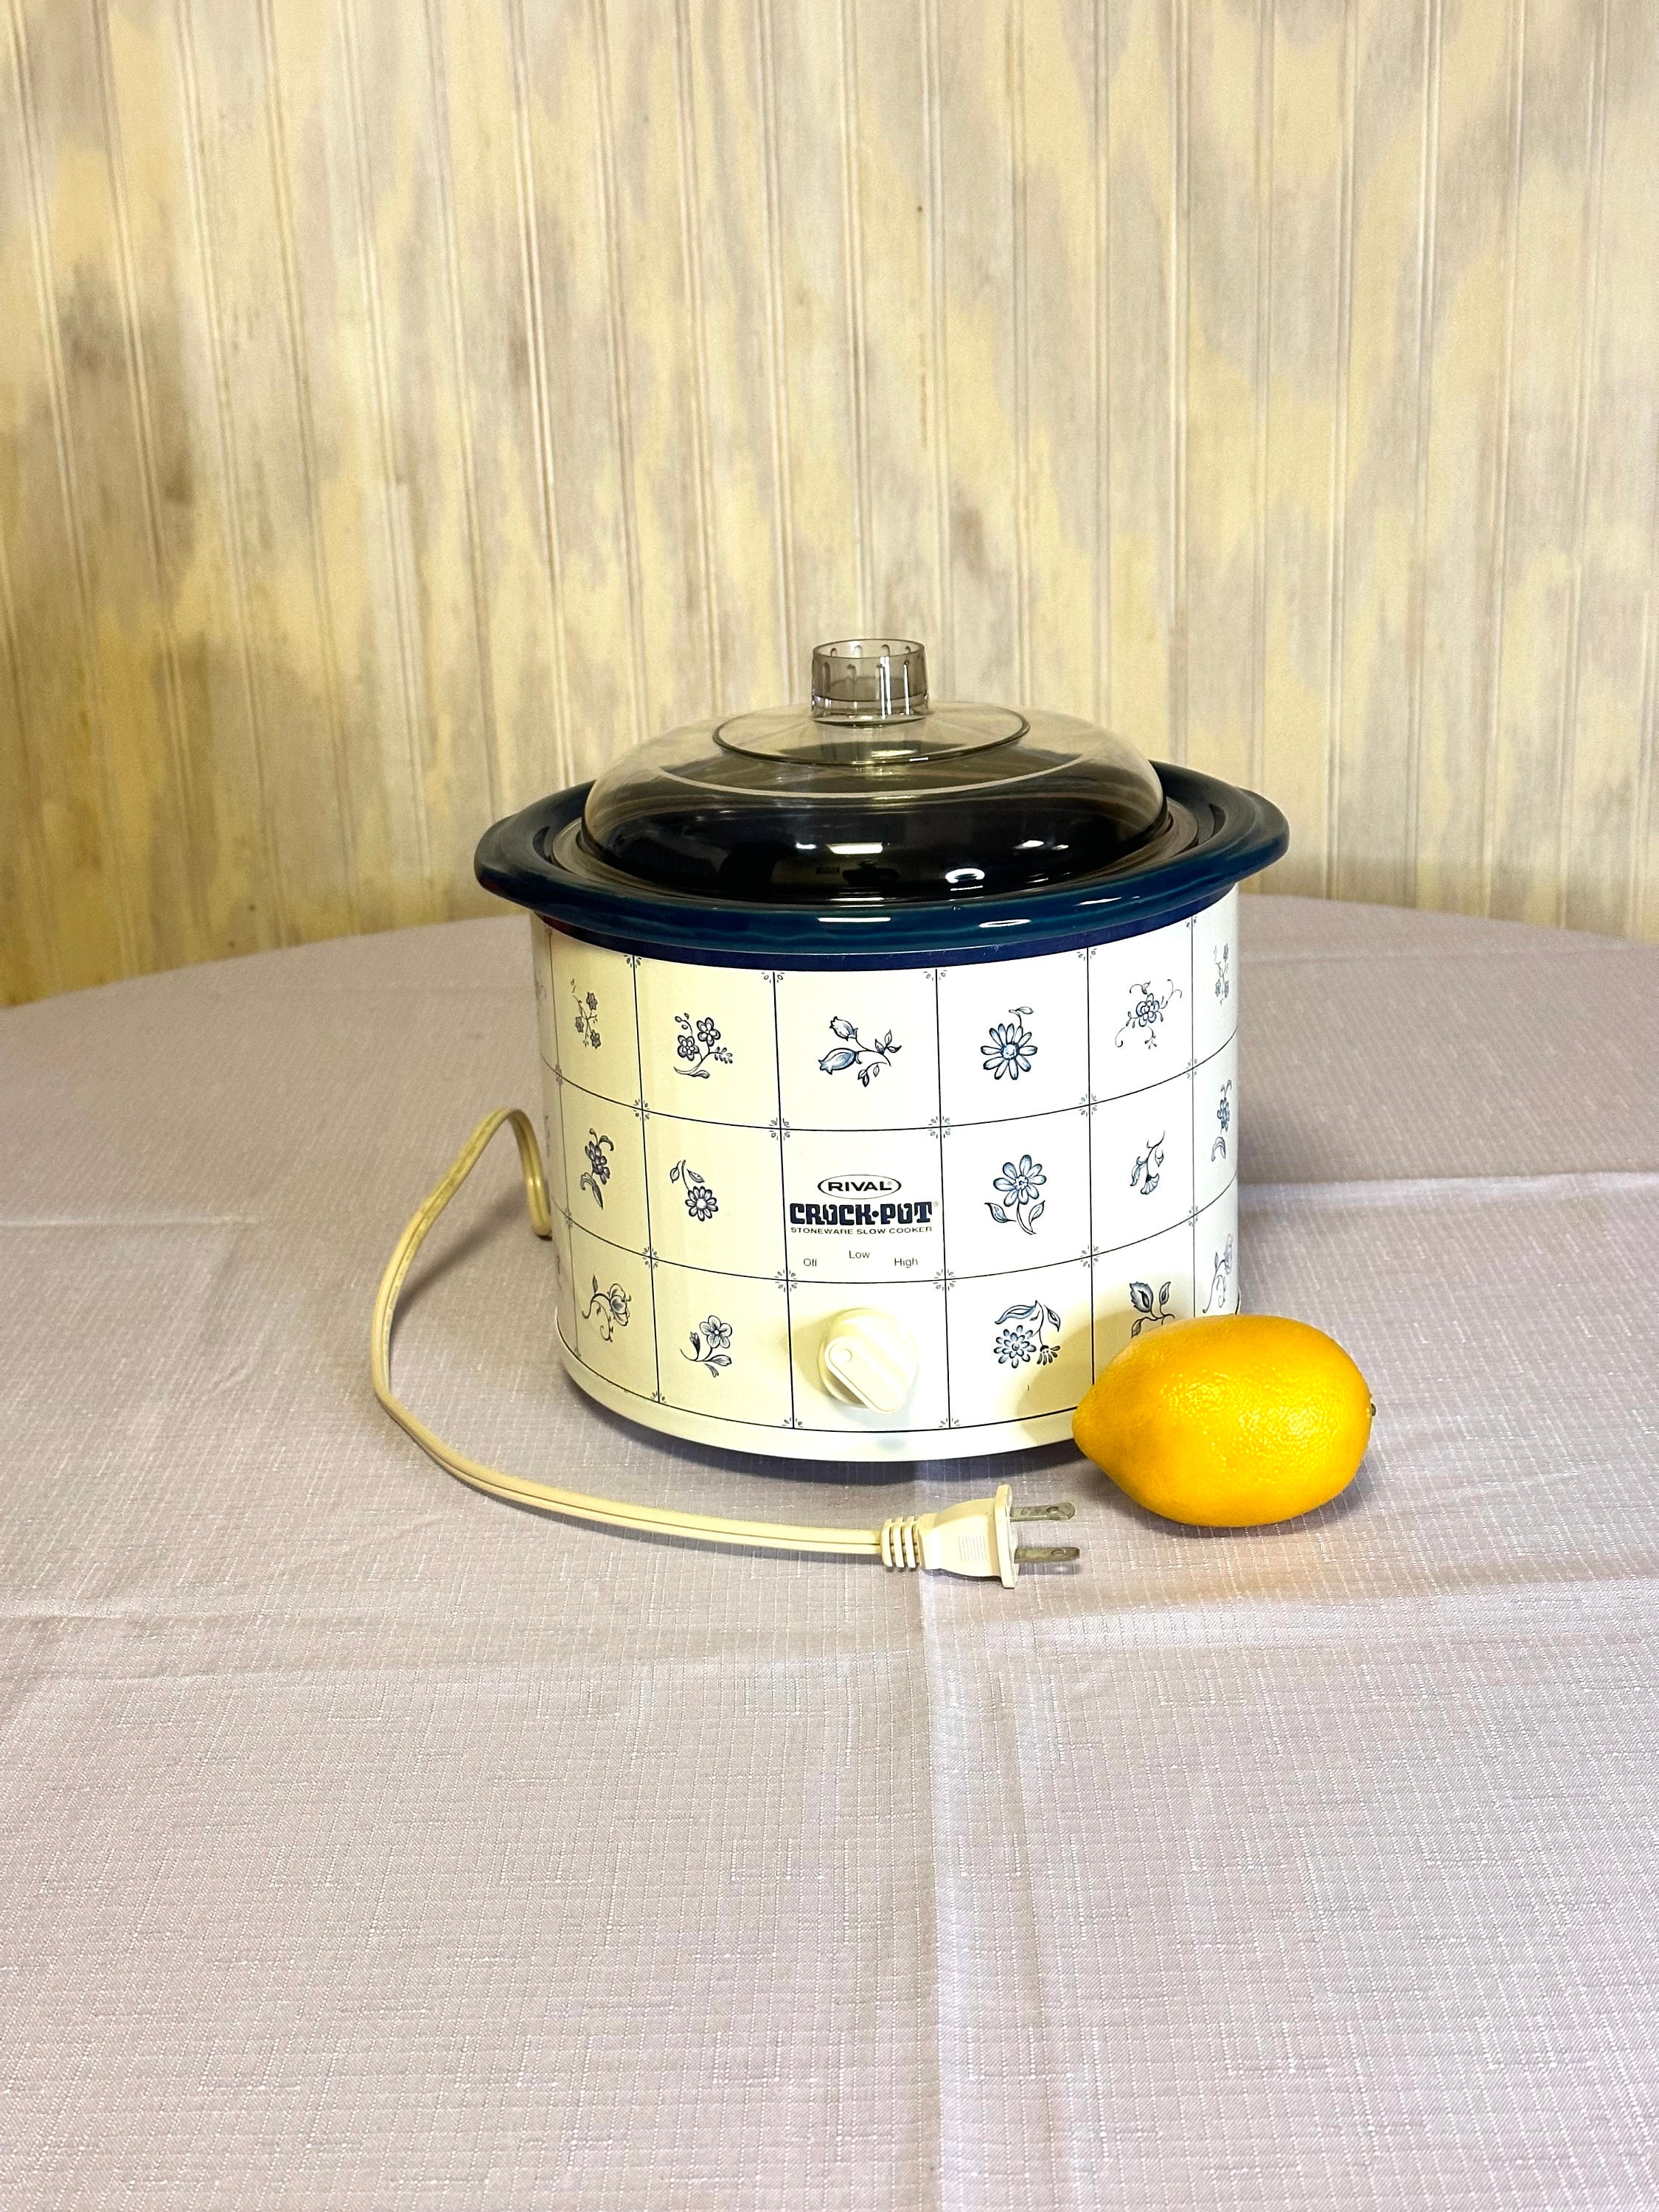 Vintage Rival Crock-Pot Unused Original Packaging and Contents 5 QT 19 –  Shop Cool Vintage Decor